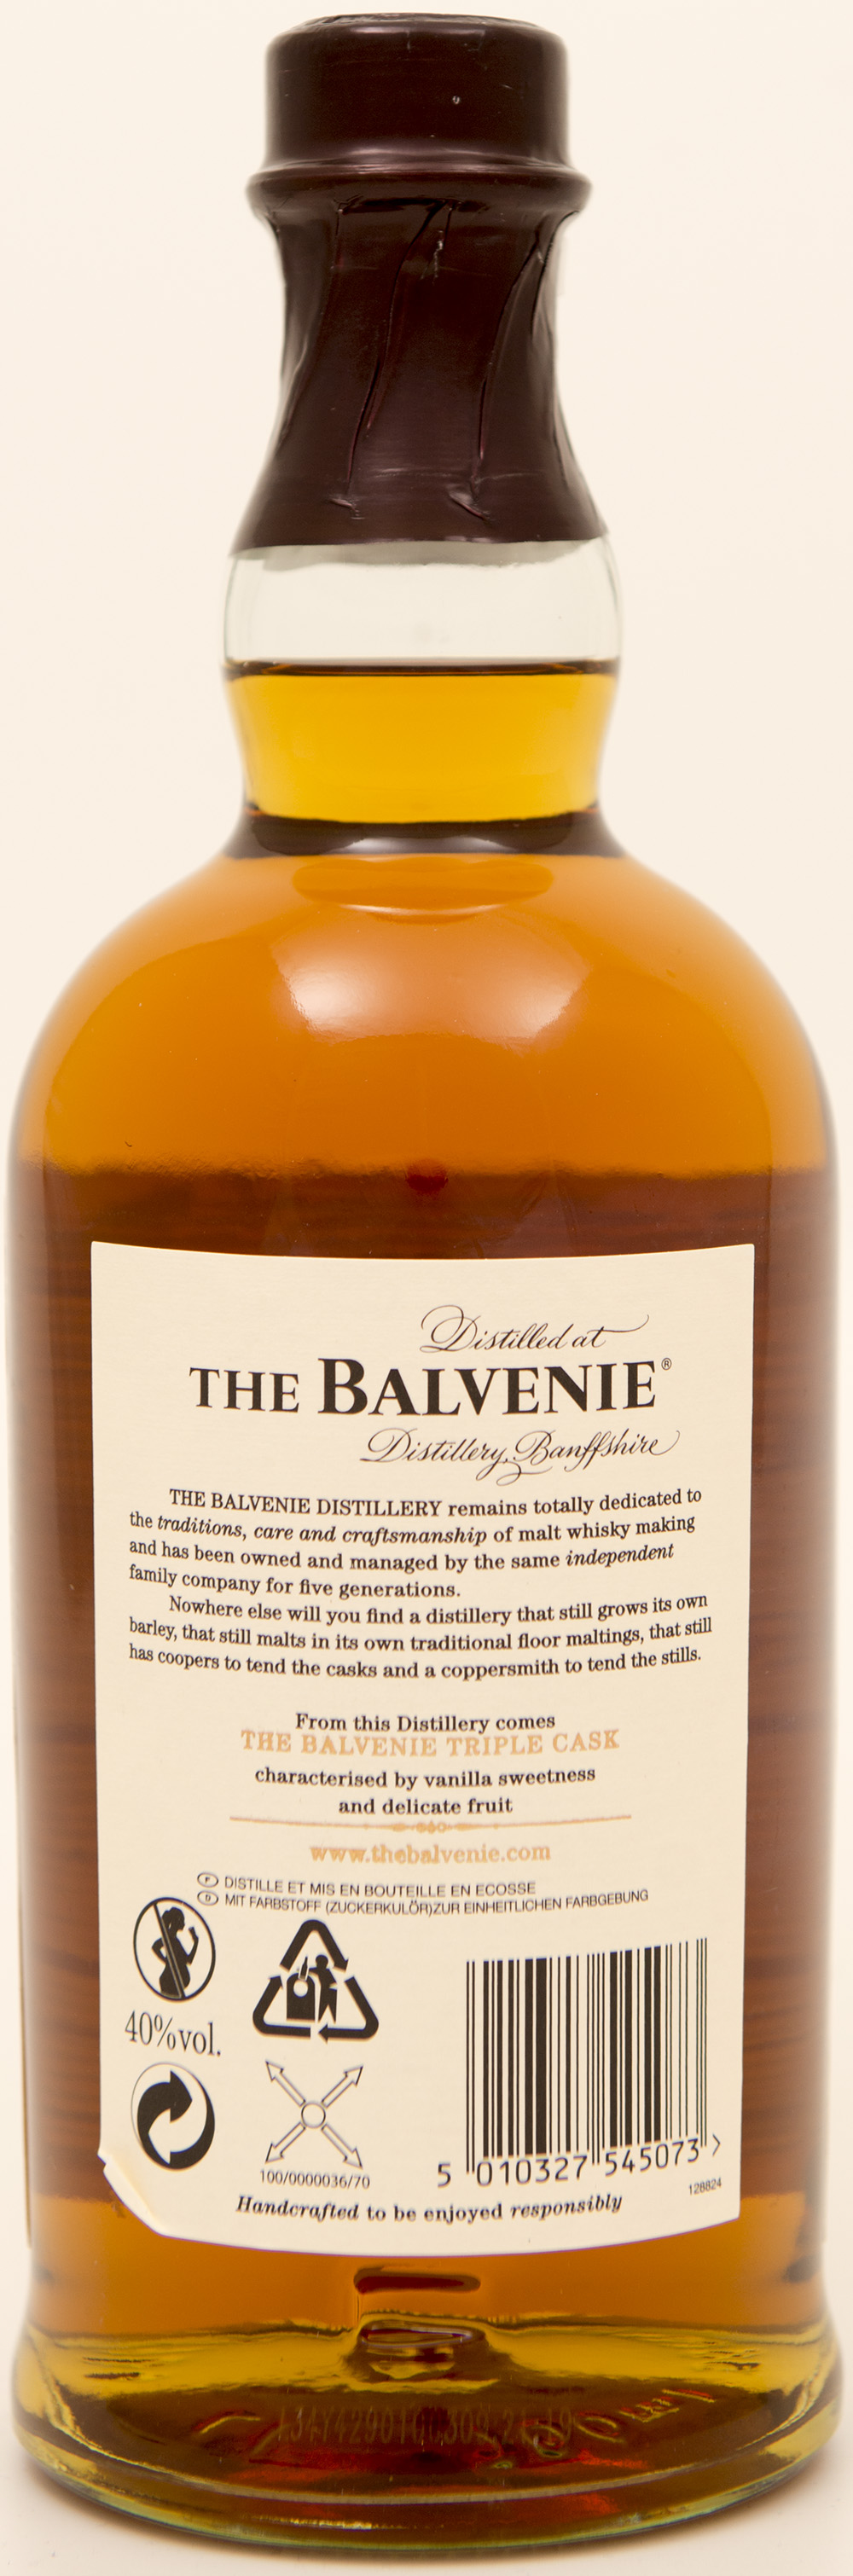 Billede: DSC_3731 - The Balvenie 16 Triple Cask (bottle back).jpg